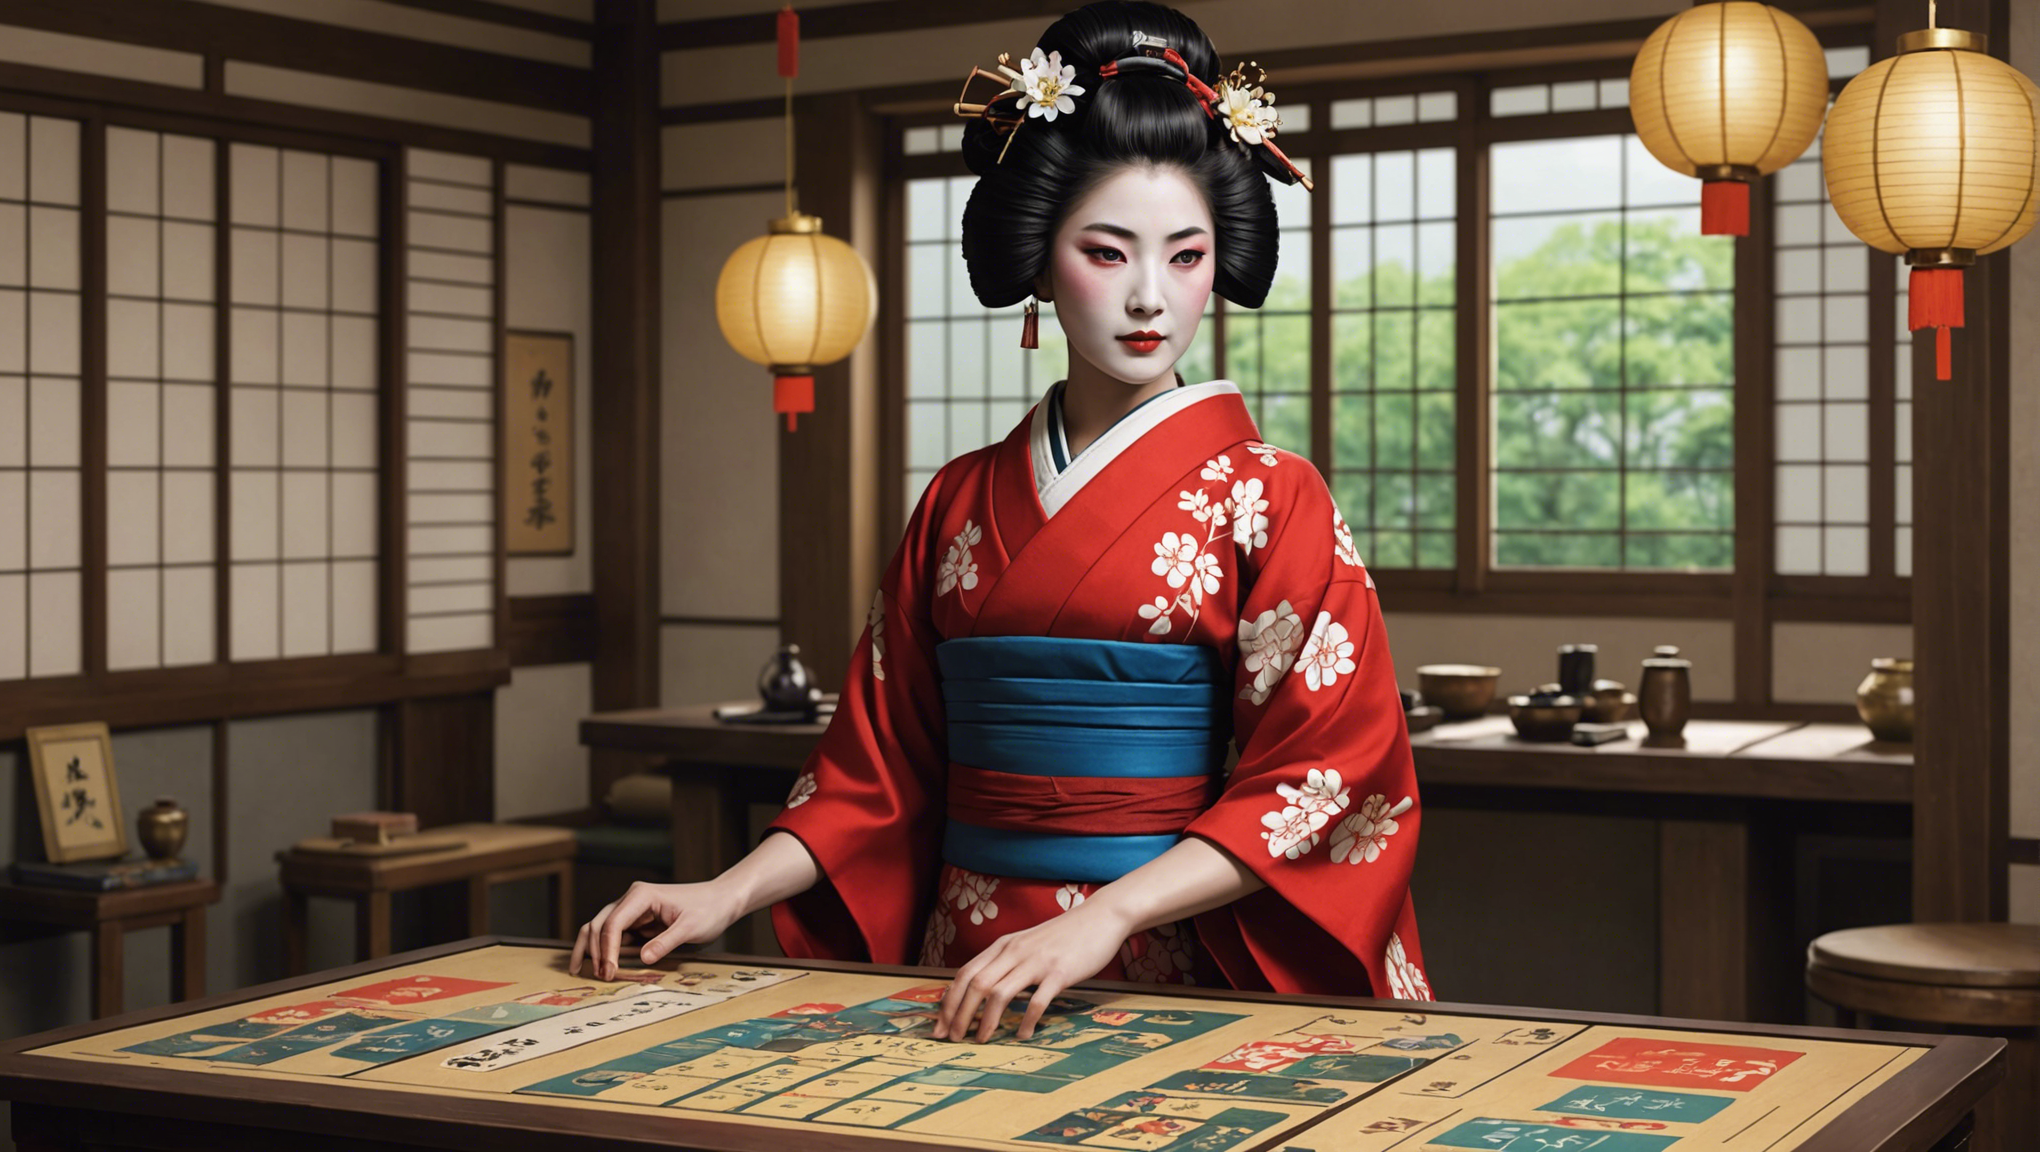 hanamikoji: geisha's road - le jeu de société le plus captivant de l'année ? découvrez notre verdict dans cette critique passionnante !